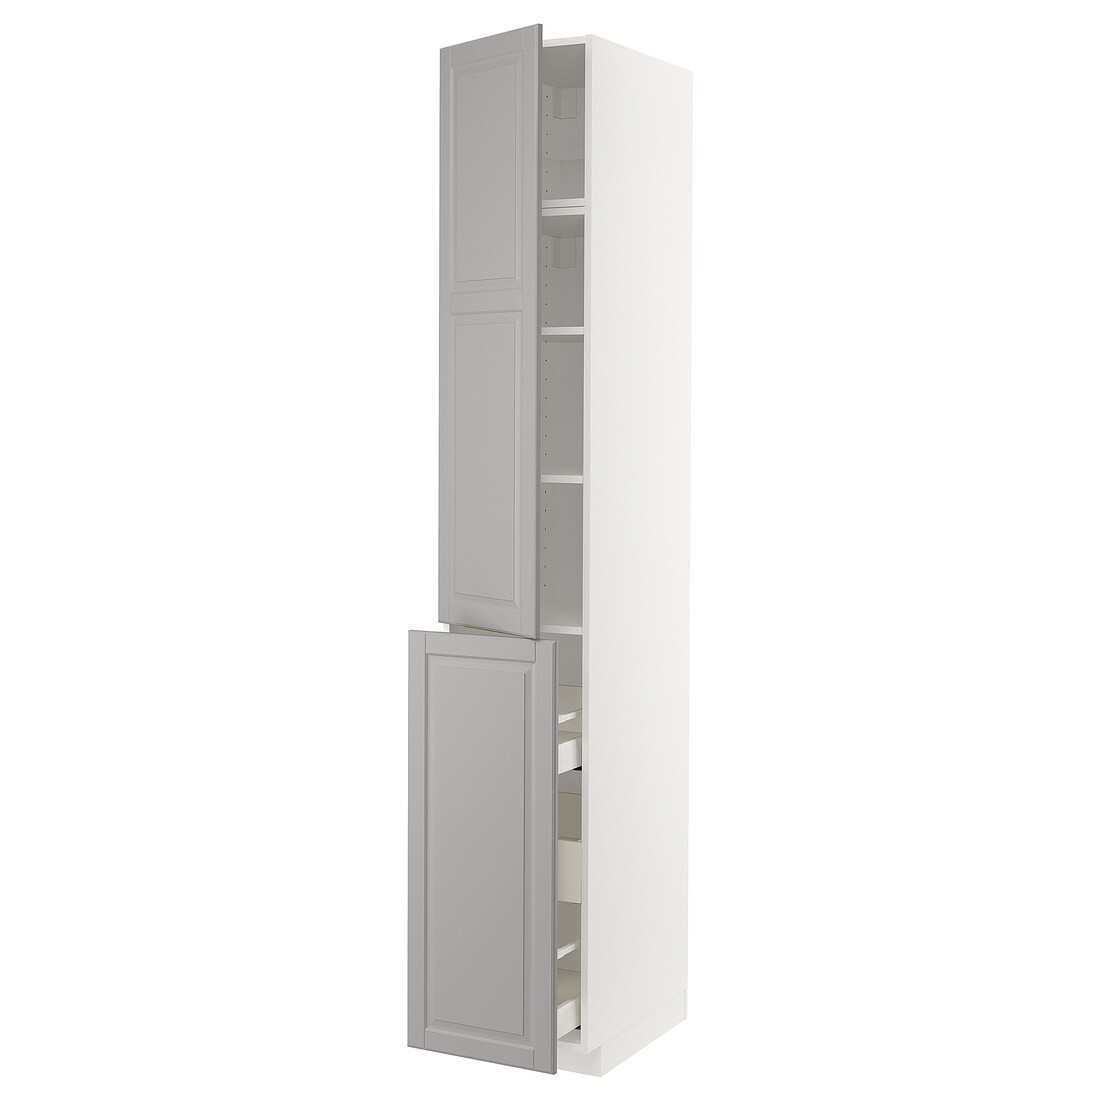 IKEA METOD МЕТОД / MAXIMERA МАКСІМЕРА Висока шафа 3 шухляди / 1 двері / 2 полиці, білий / Bodbyn сірий, 40x60x240 см 29461736 294.617.36